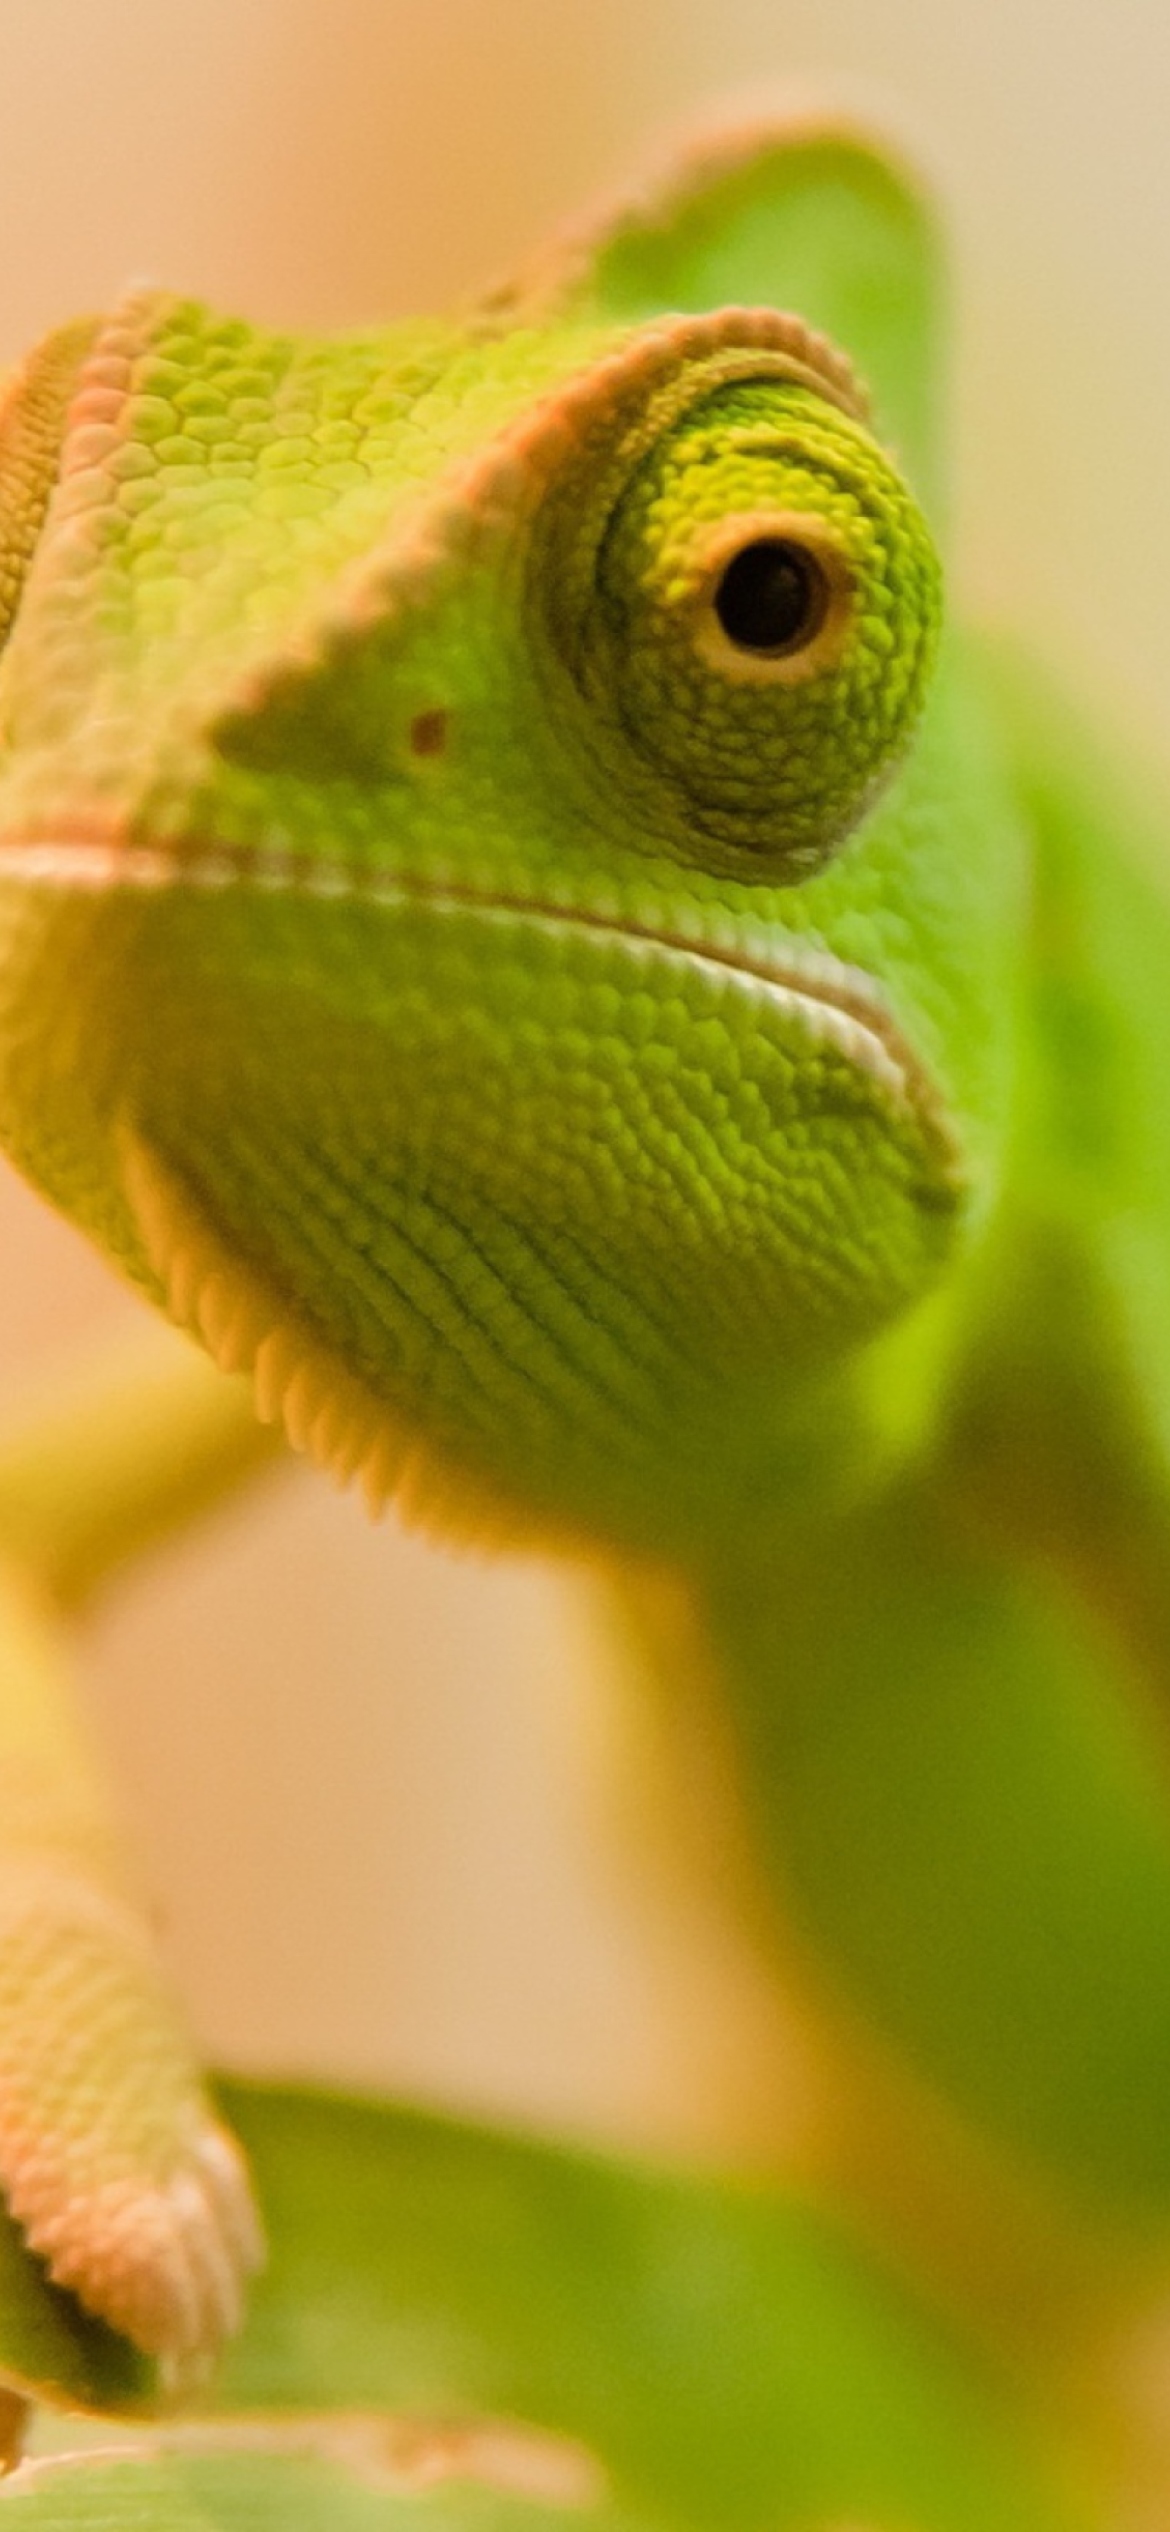 Green Chameleon wallpaper 1170x2532